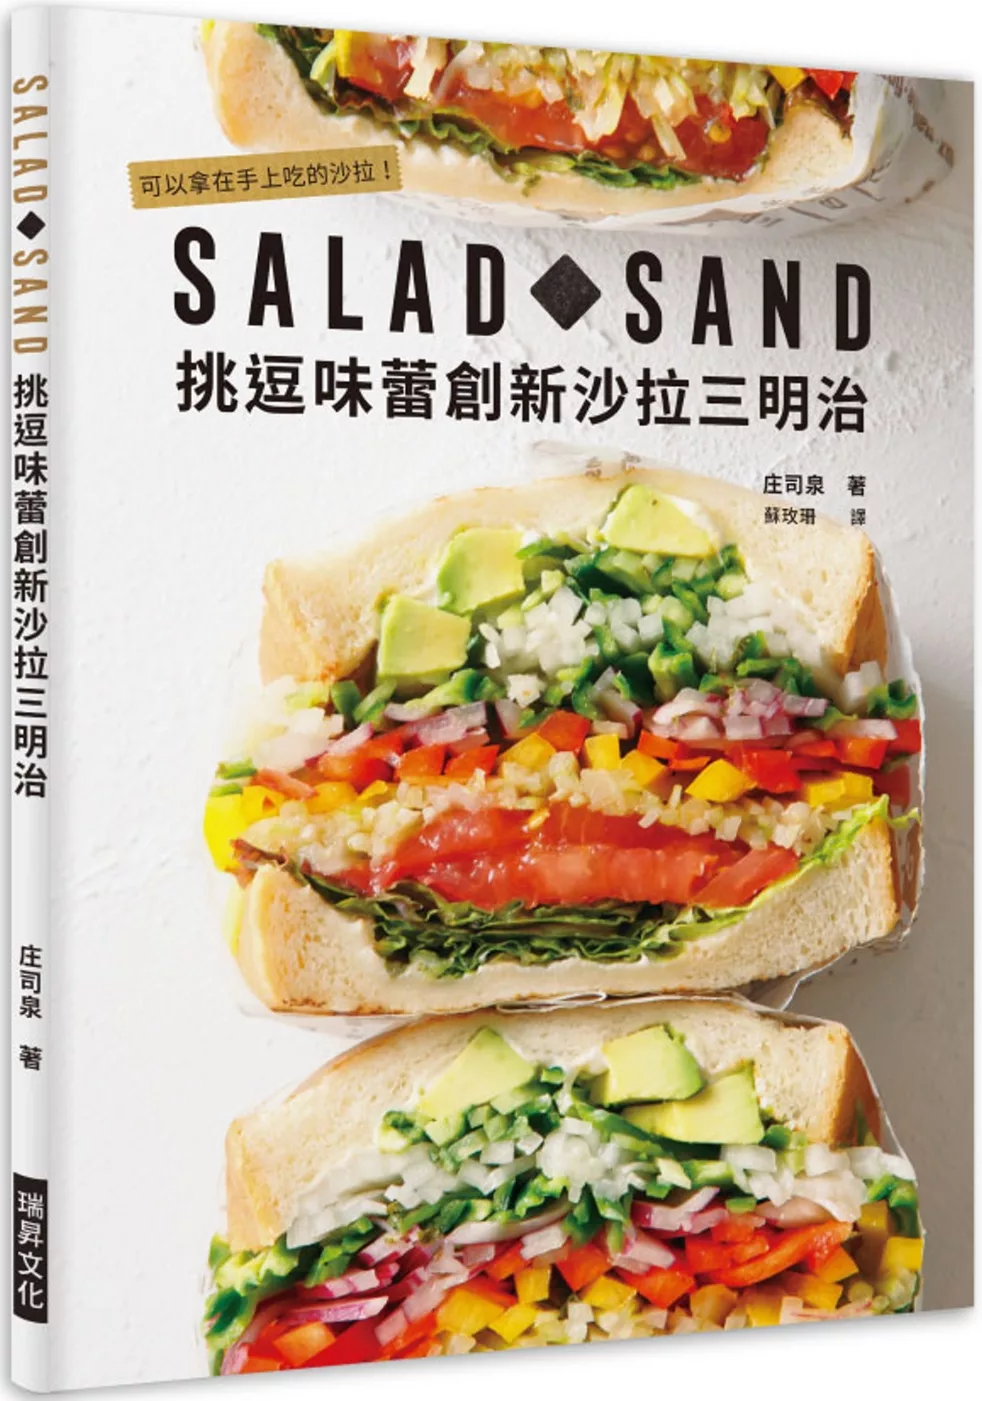 SALAD SAND 挑逗味蕾創新沙拉三明治：可以拿在手上吃的沙拉！